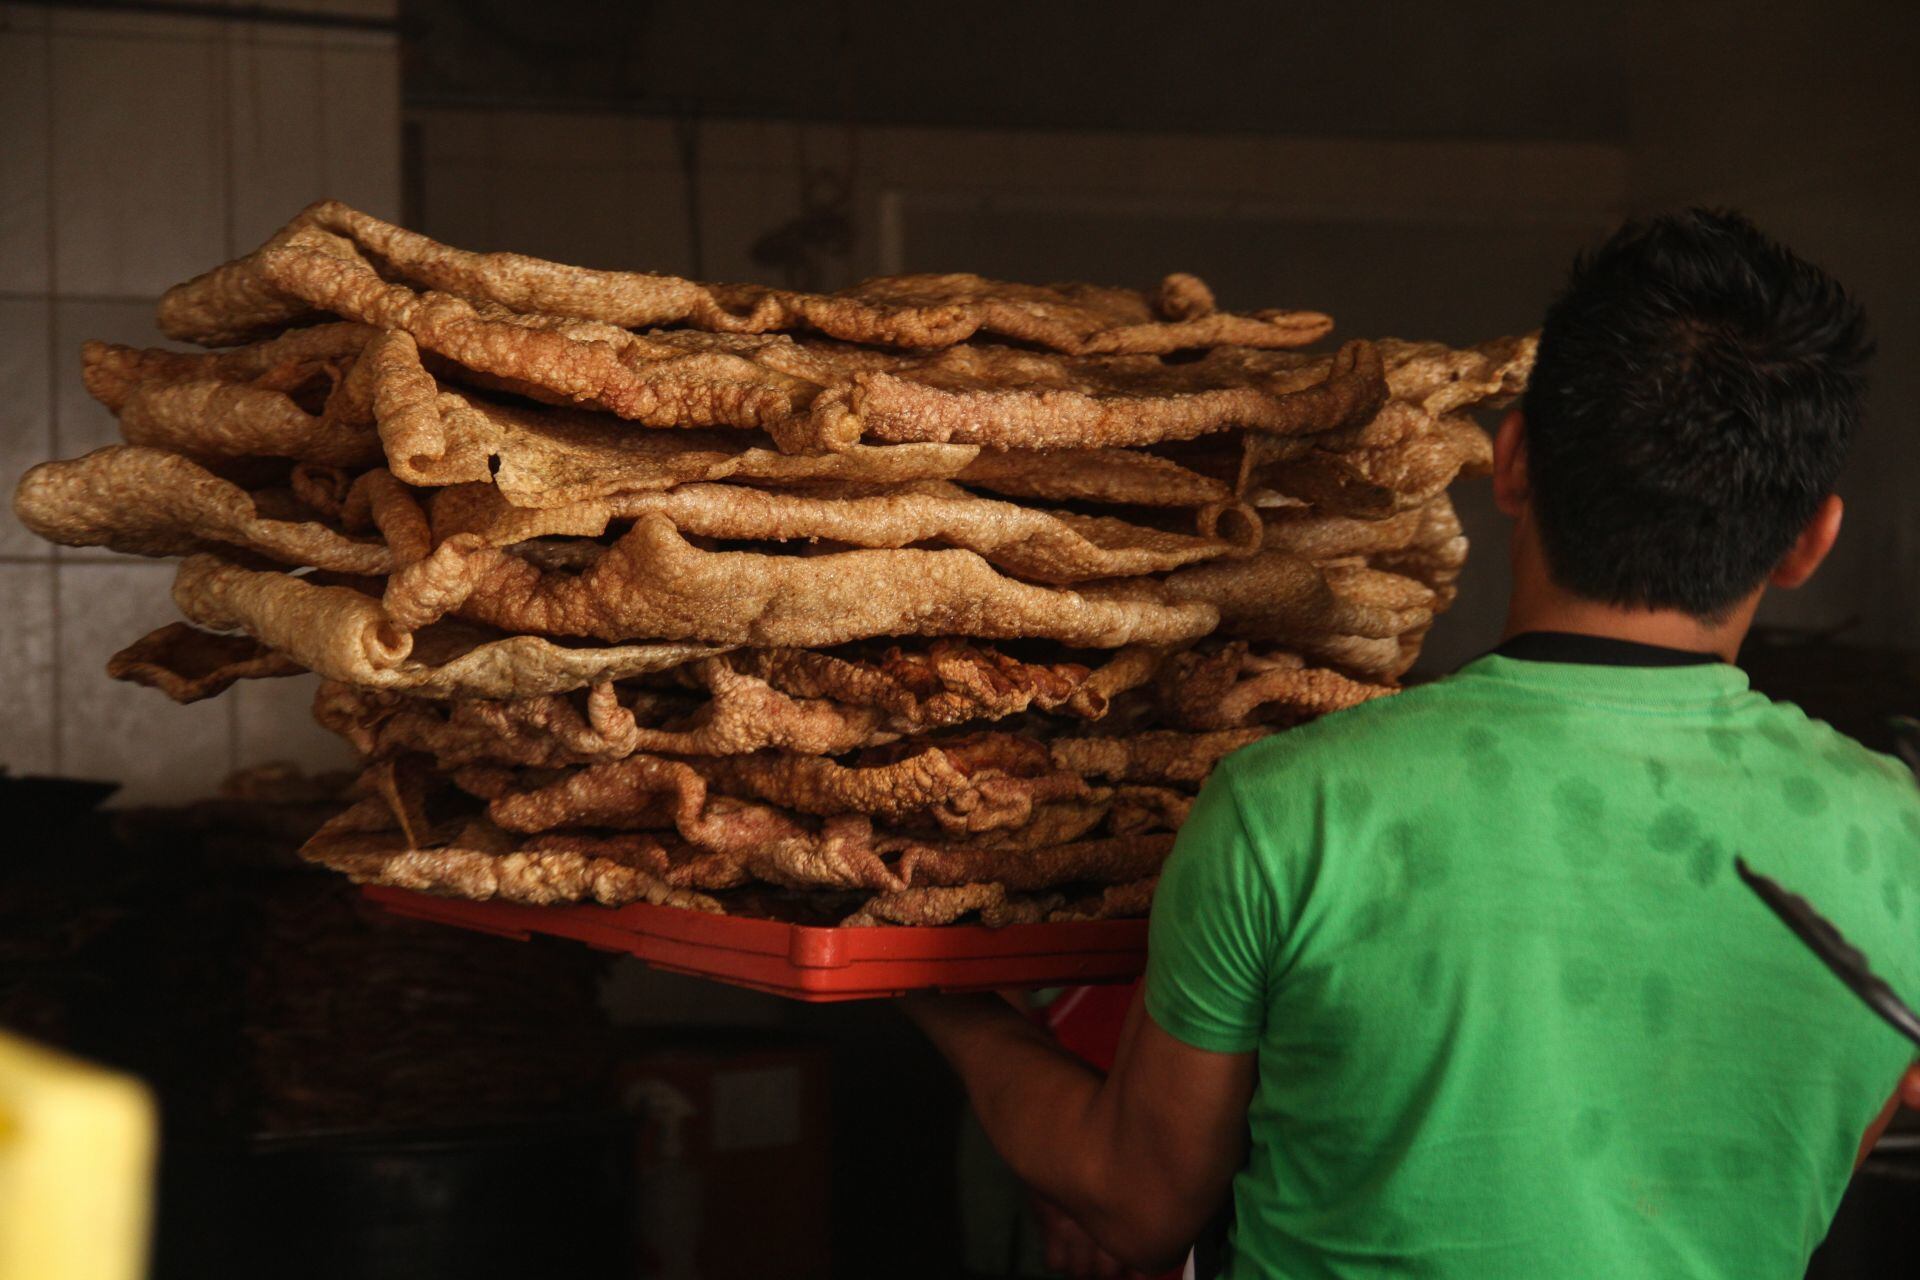 El chicharrón de cerdo se vende en lugares como friturerías, mientras que el de harina se ofrece en dulcerías y supermercados. (Foto: Isabel Mateos / Cuartoscuro.com).